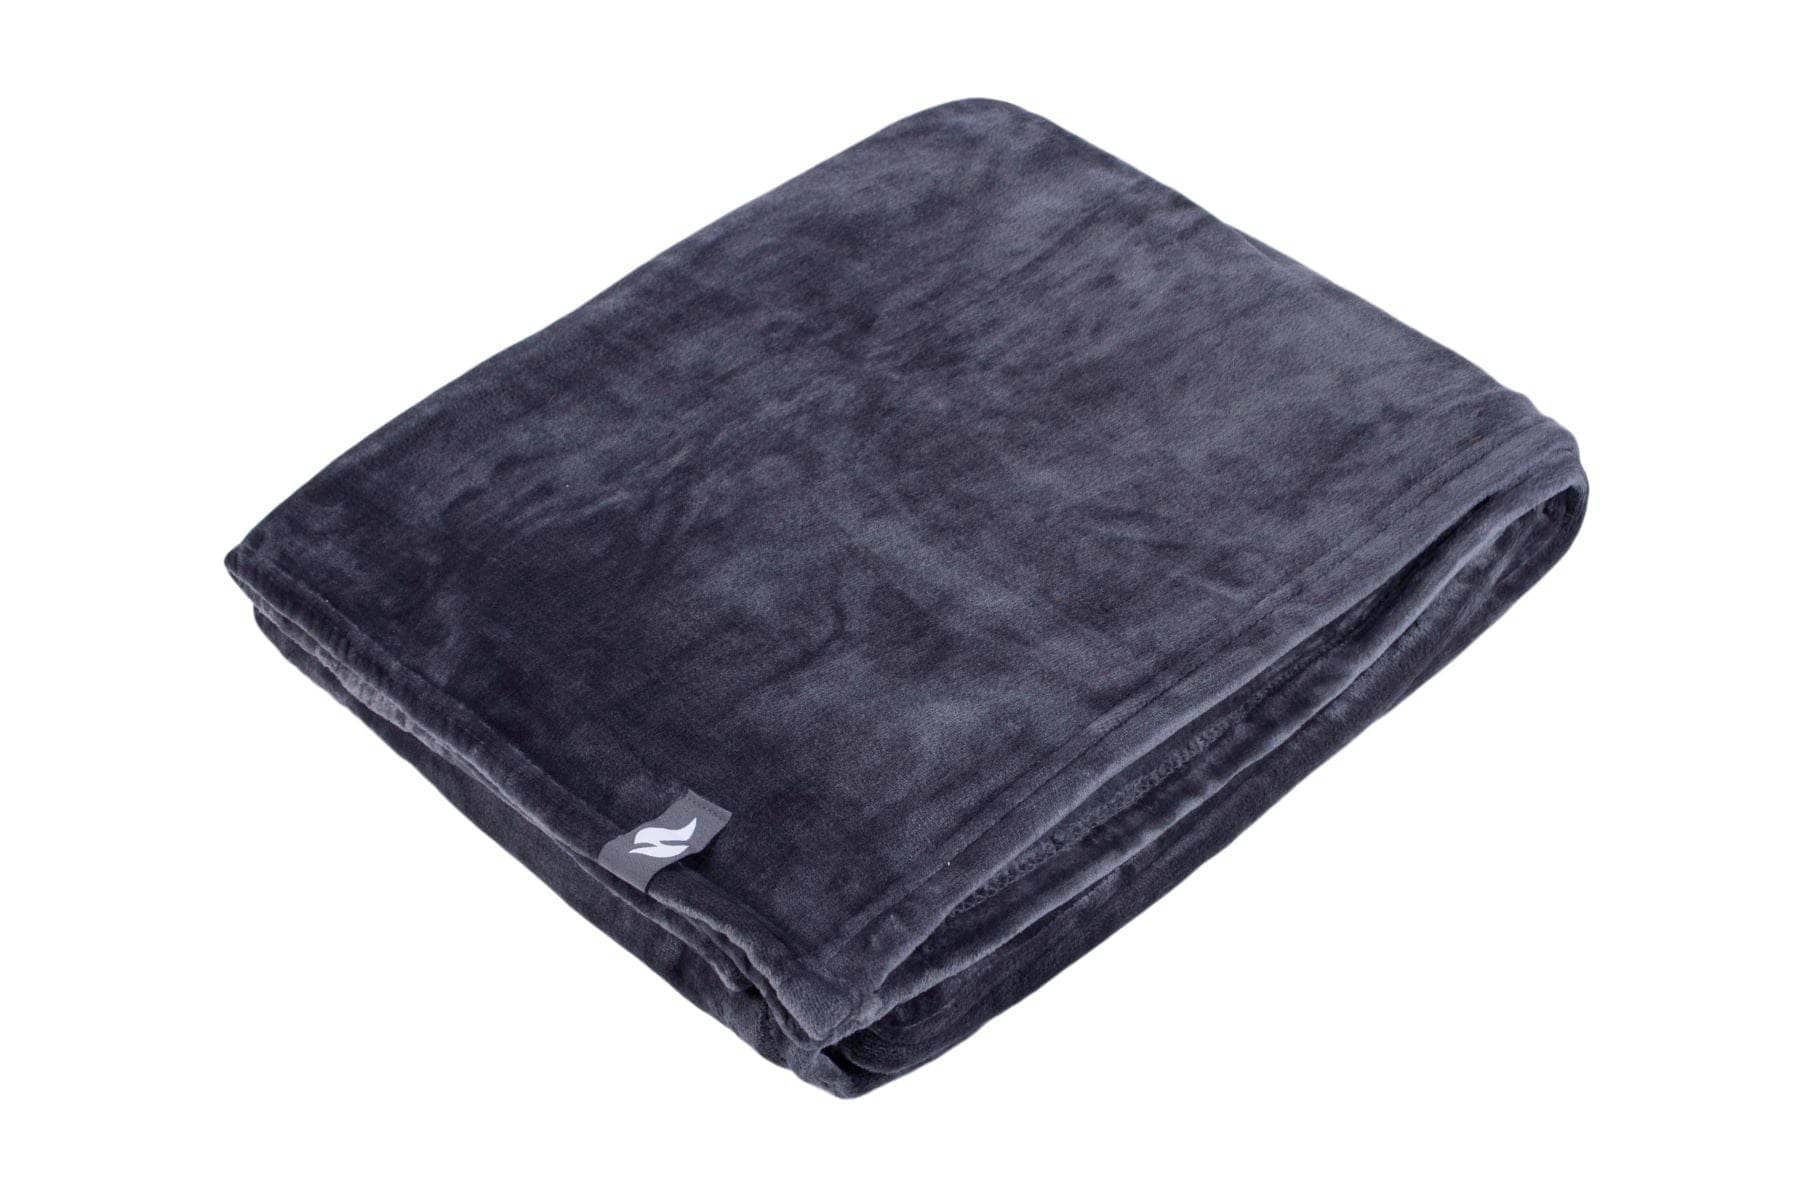 Homeware  -  Heat Holder Blanket - Antique Silver  -  60009940